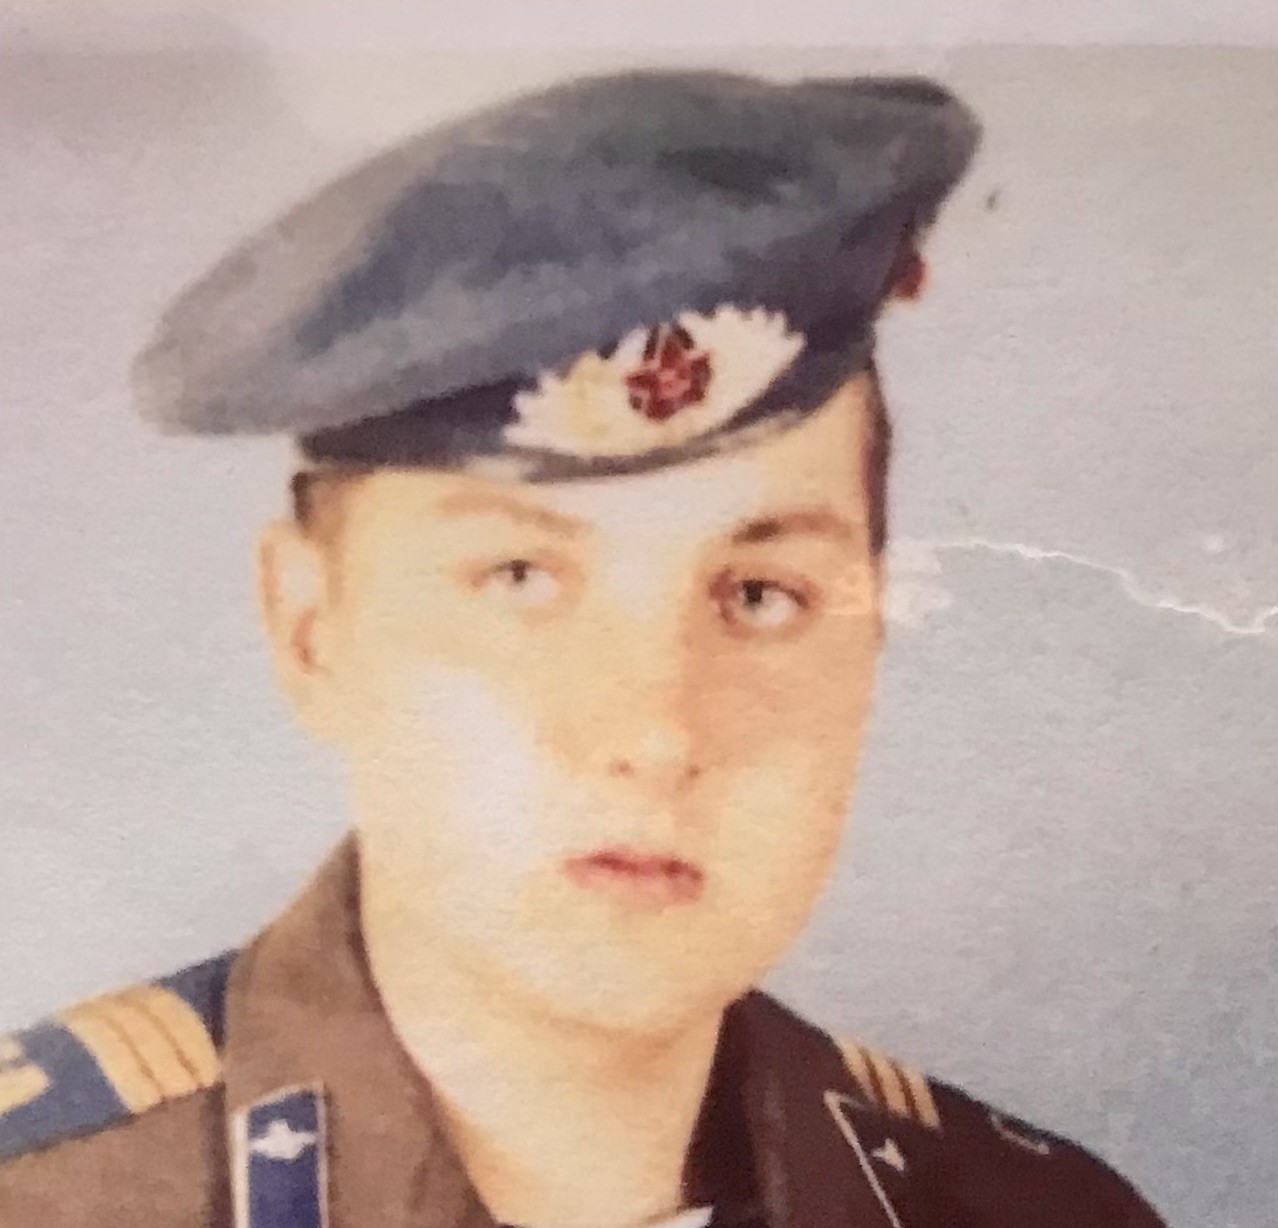 Геннадий Викторович Кравченко, во время обучения в учебной части, перед отправлением в Афганистан